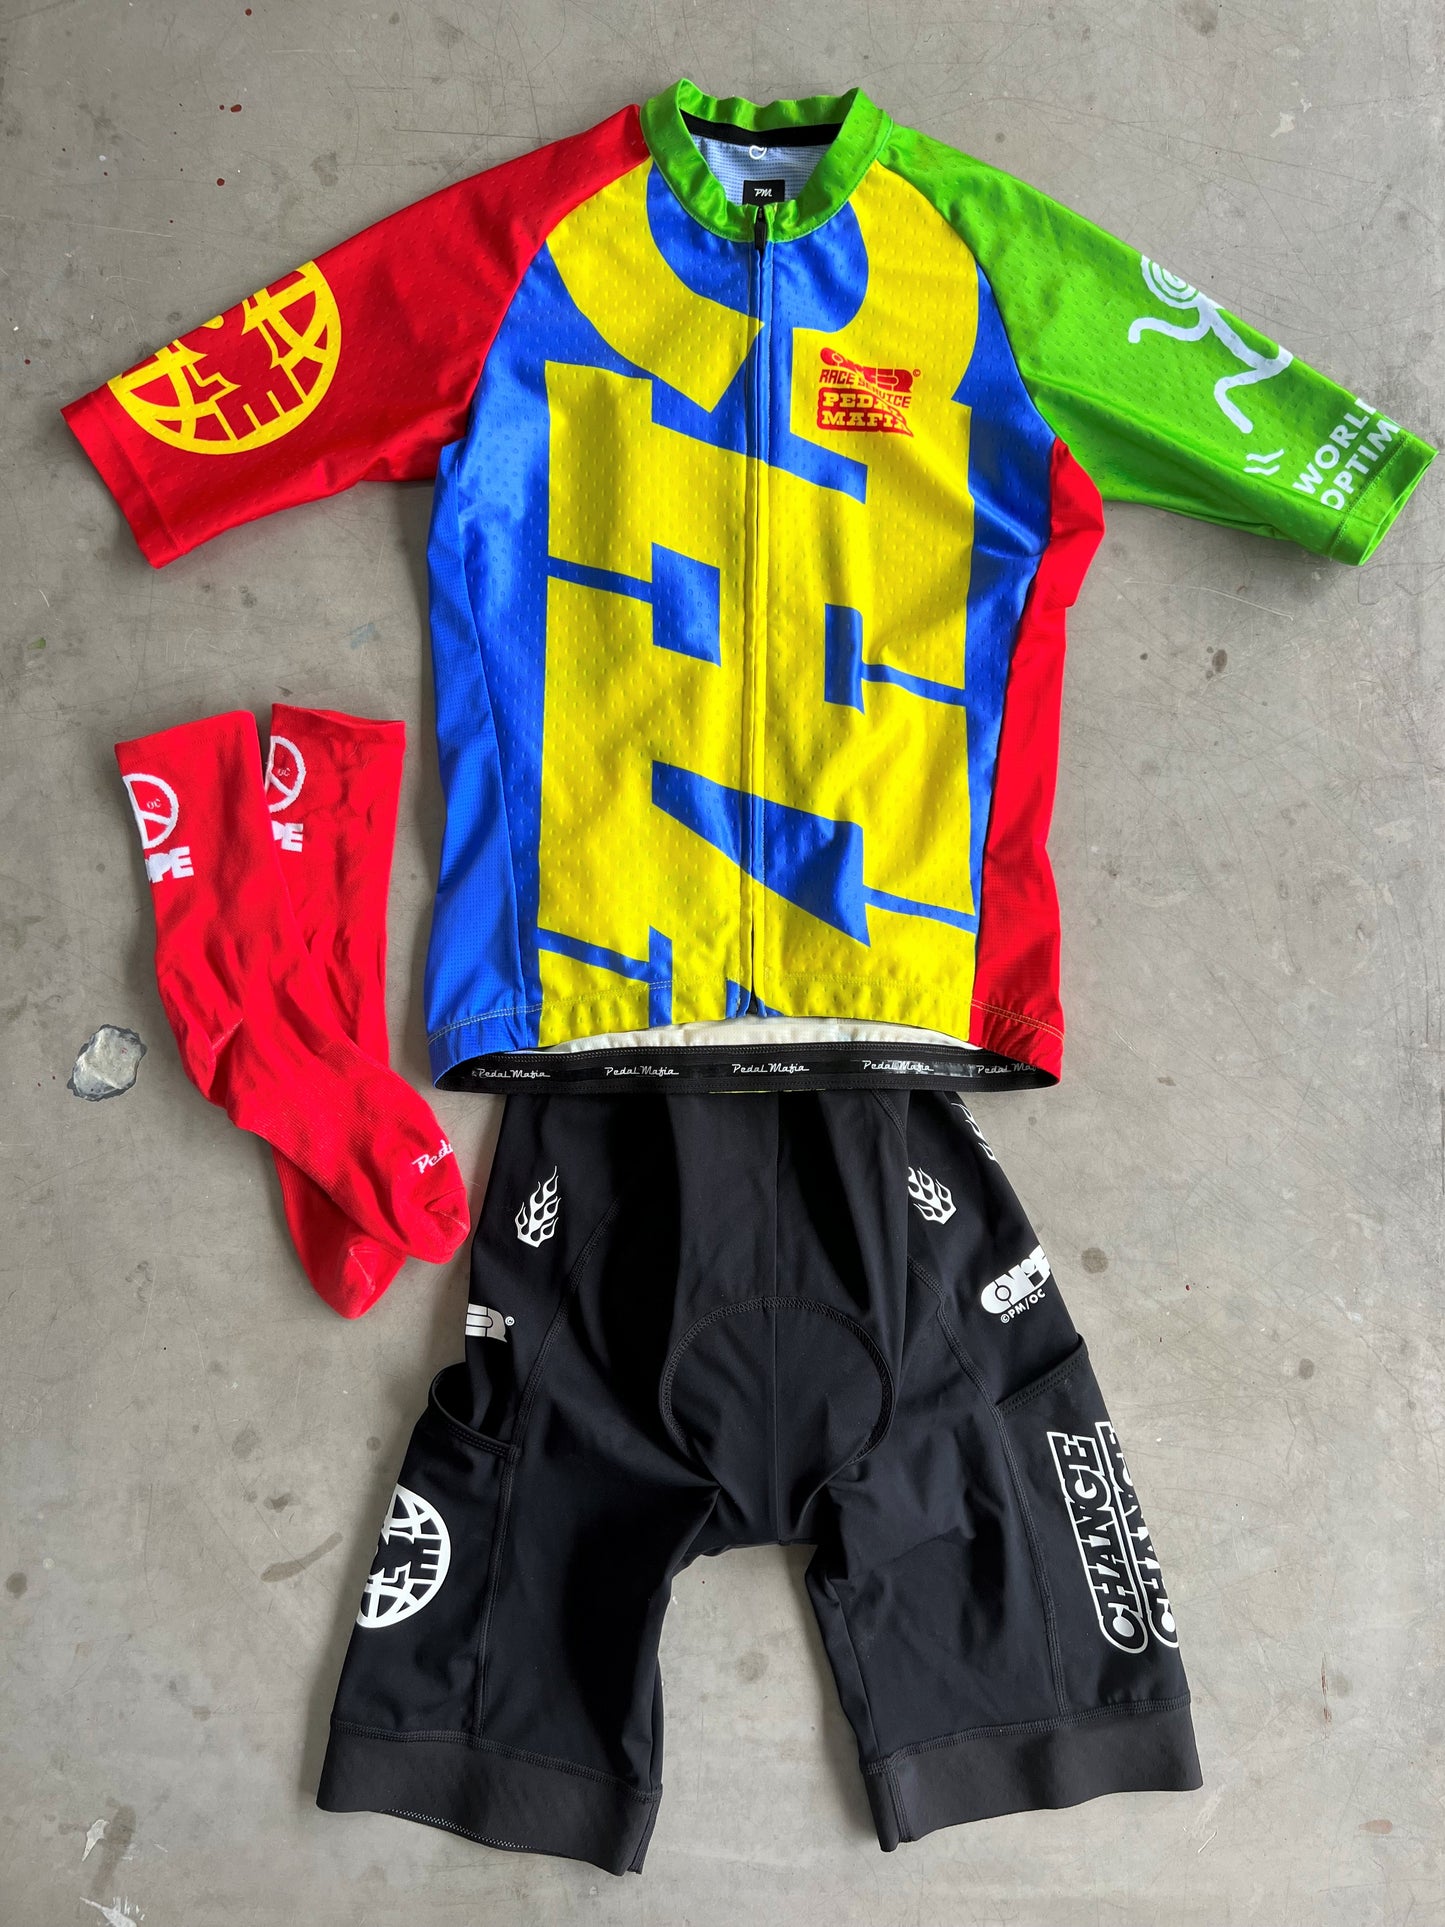 Pedal Mafia / Ornamental Conifer Collab - Jersey, Bibs & Sock Bundle | S | Rider-Issued Pro Team Kit